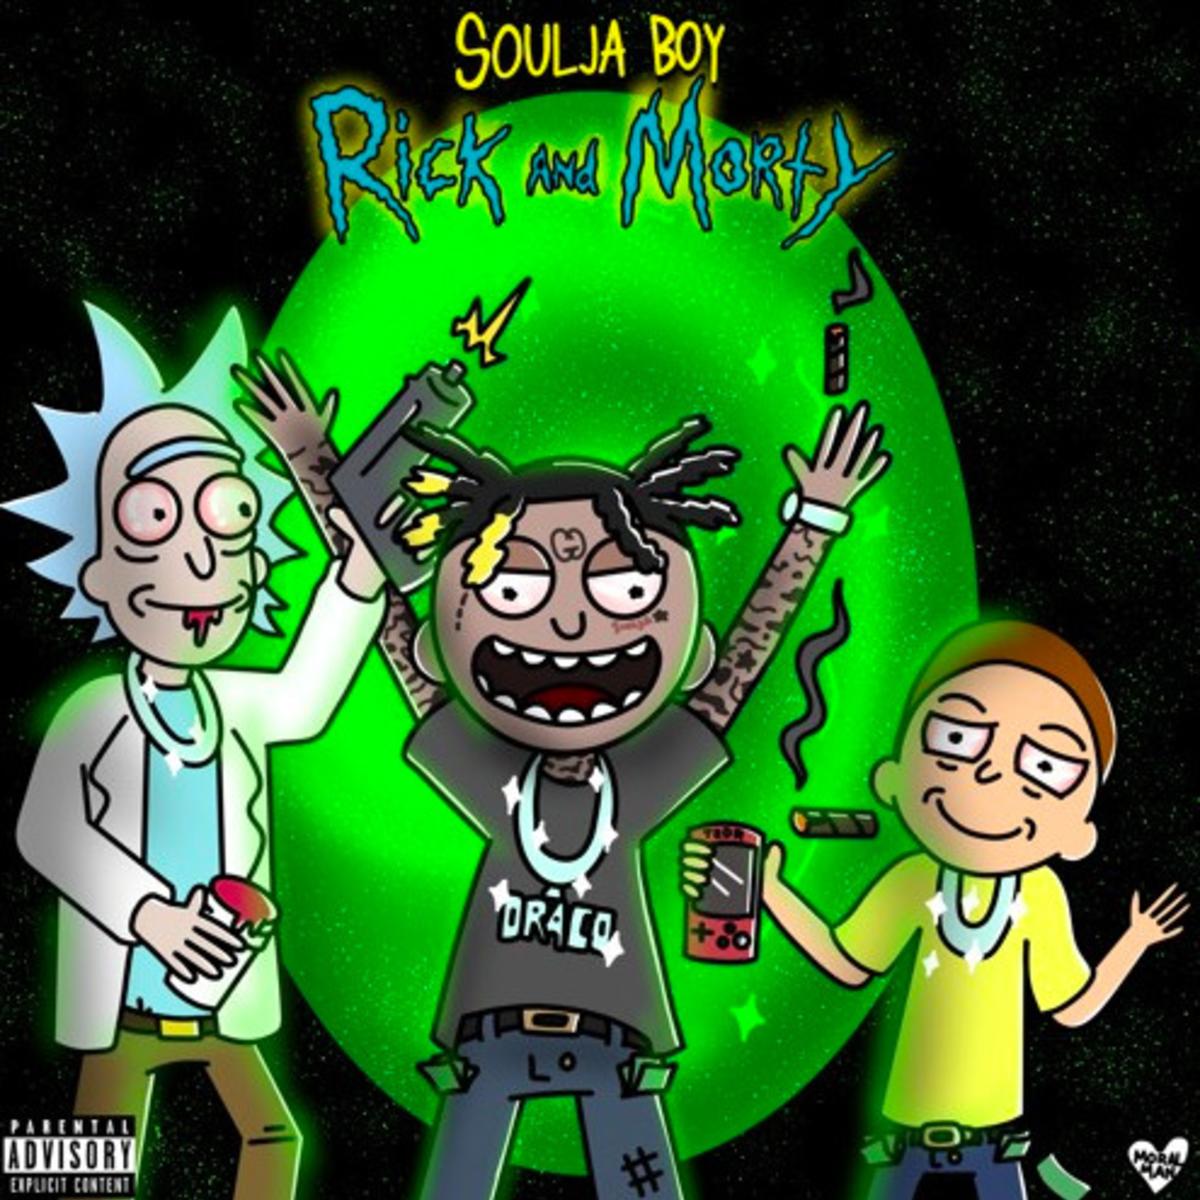 Soulja Boy - Rick and Morty